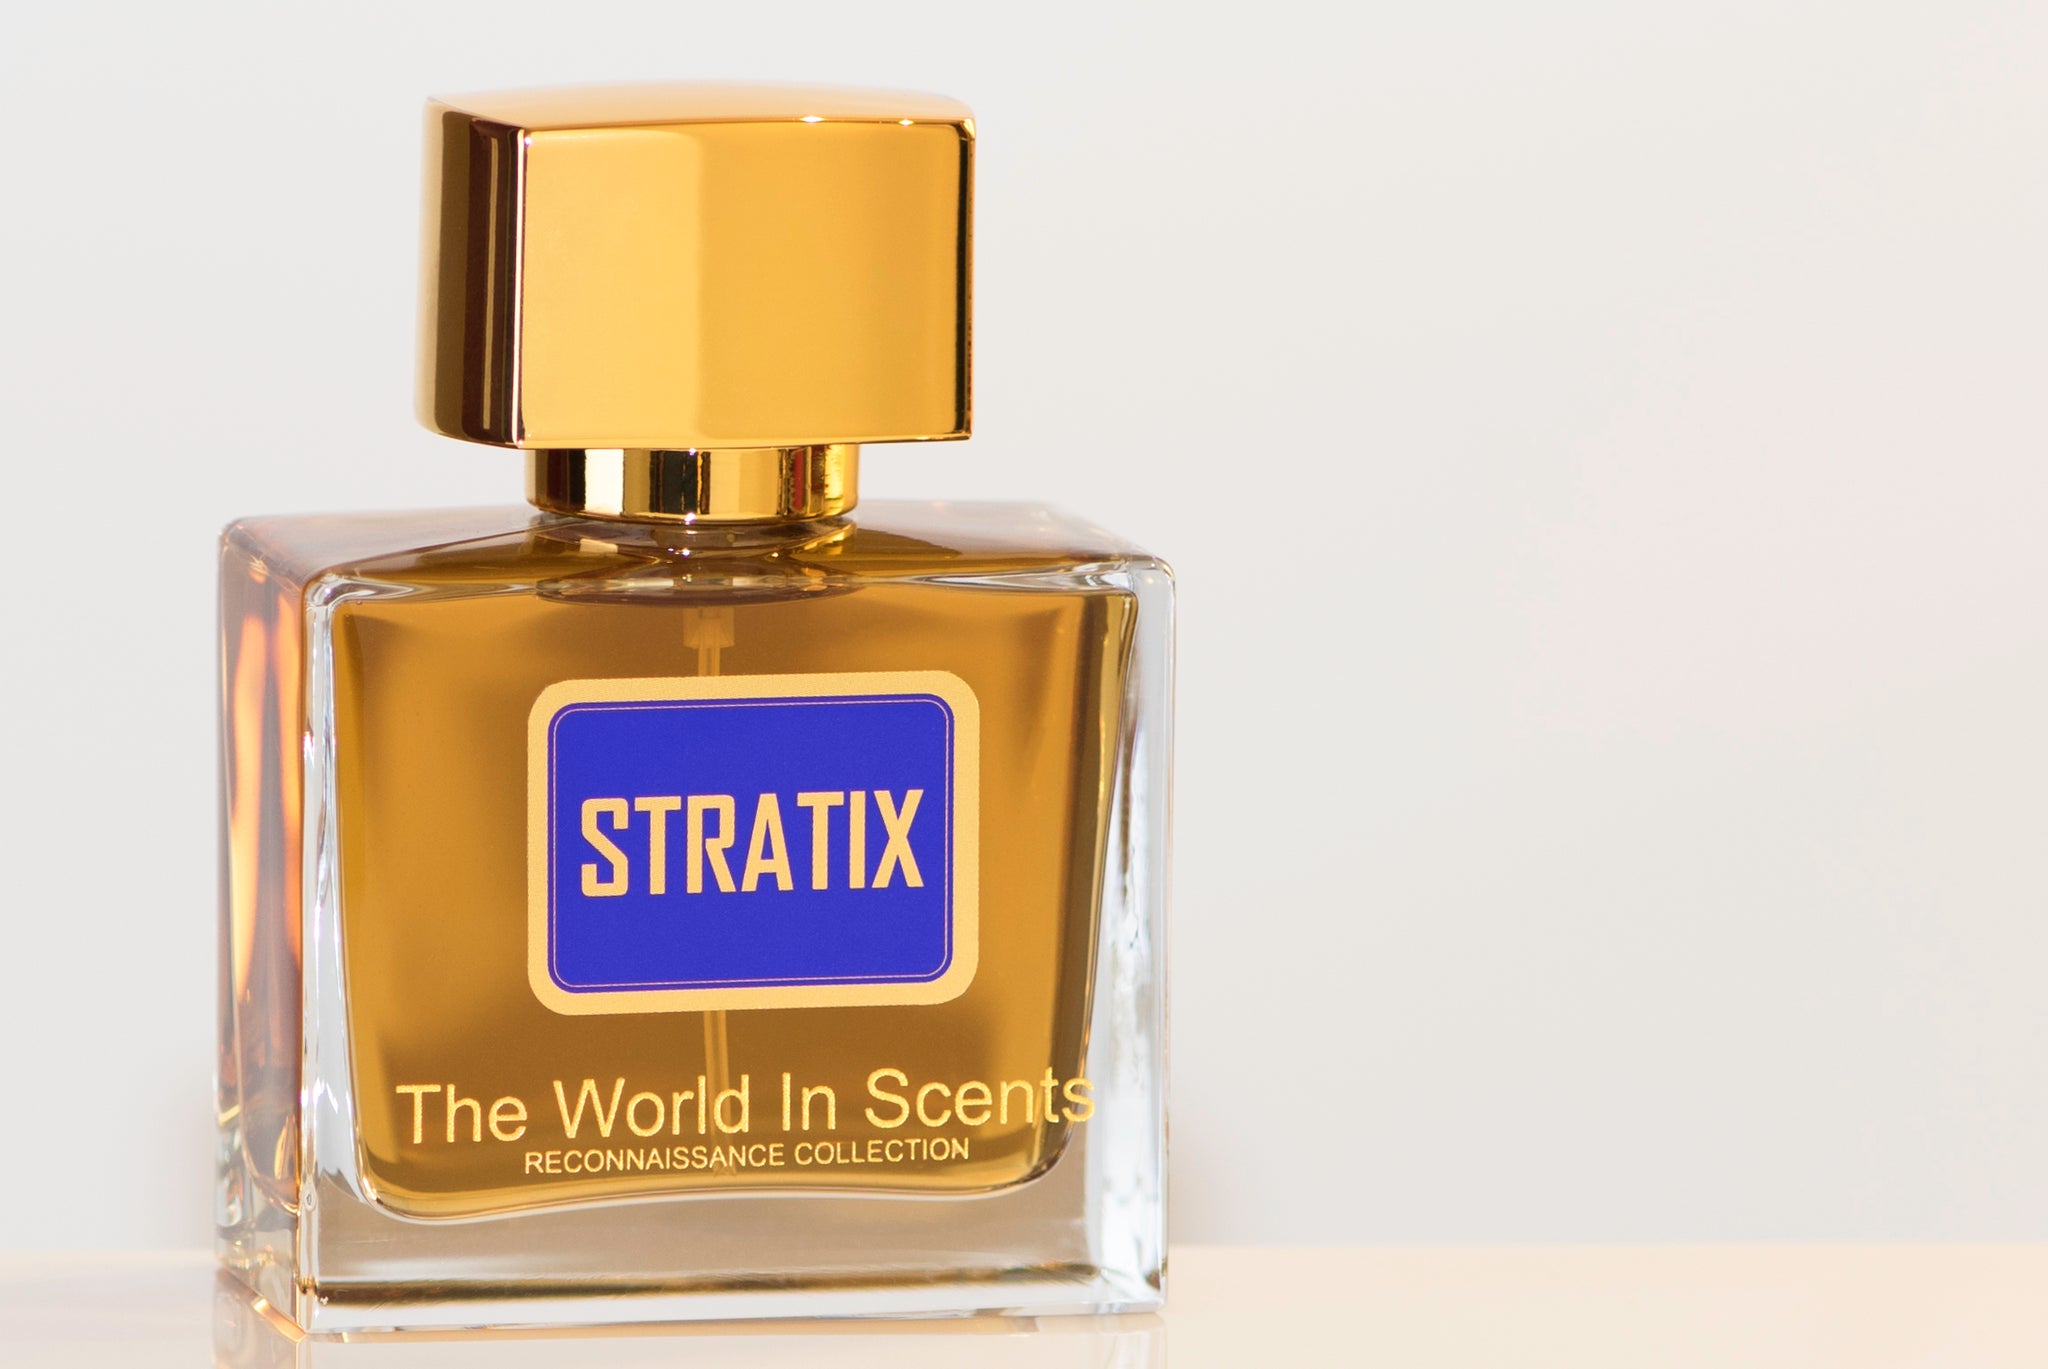 STRATIX Extrait